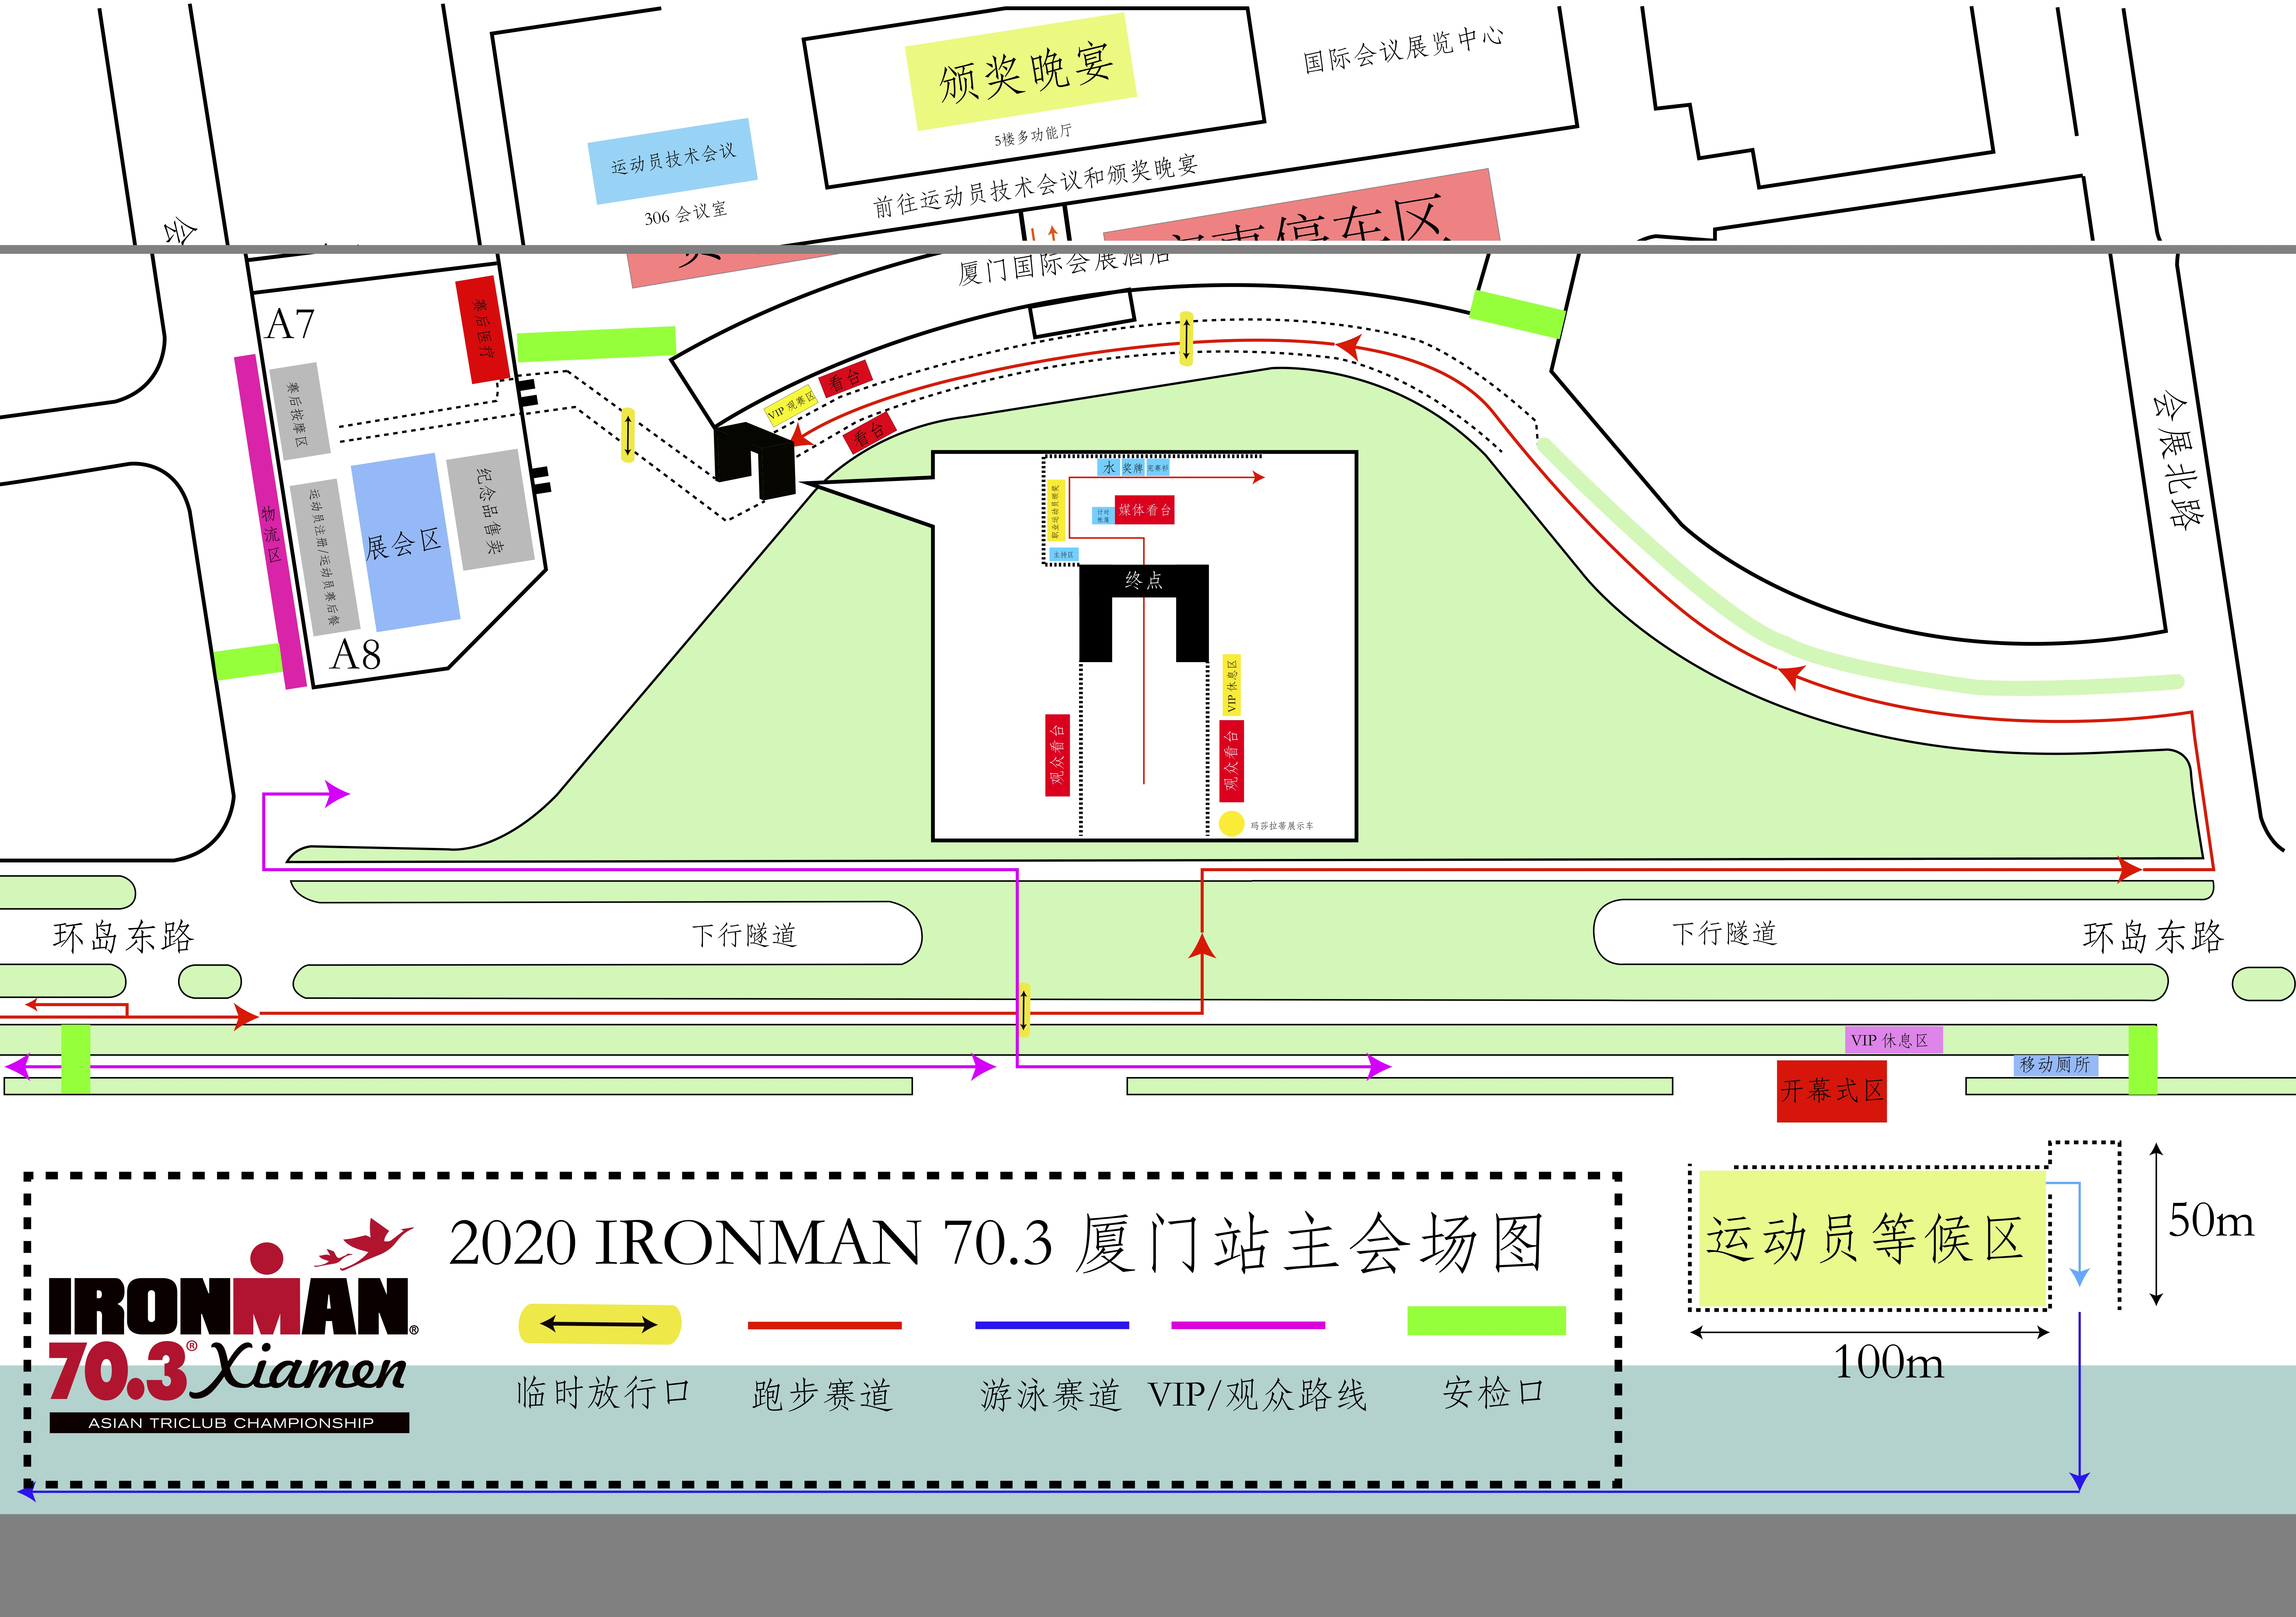 4 2018 IRONMAN 70.3 厦门站主会场图.jpg